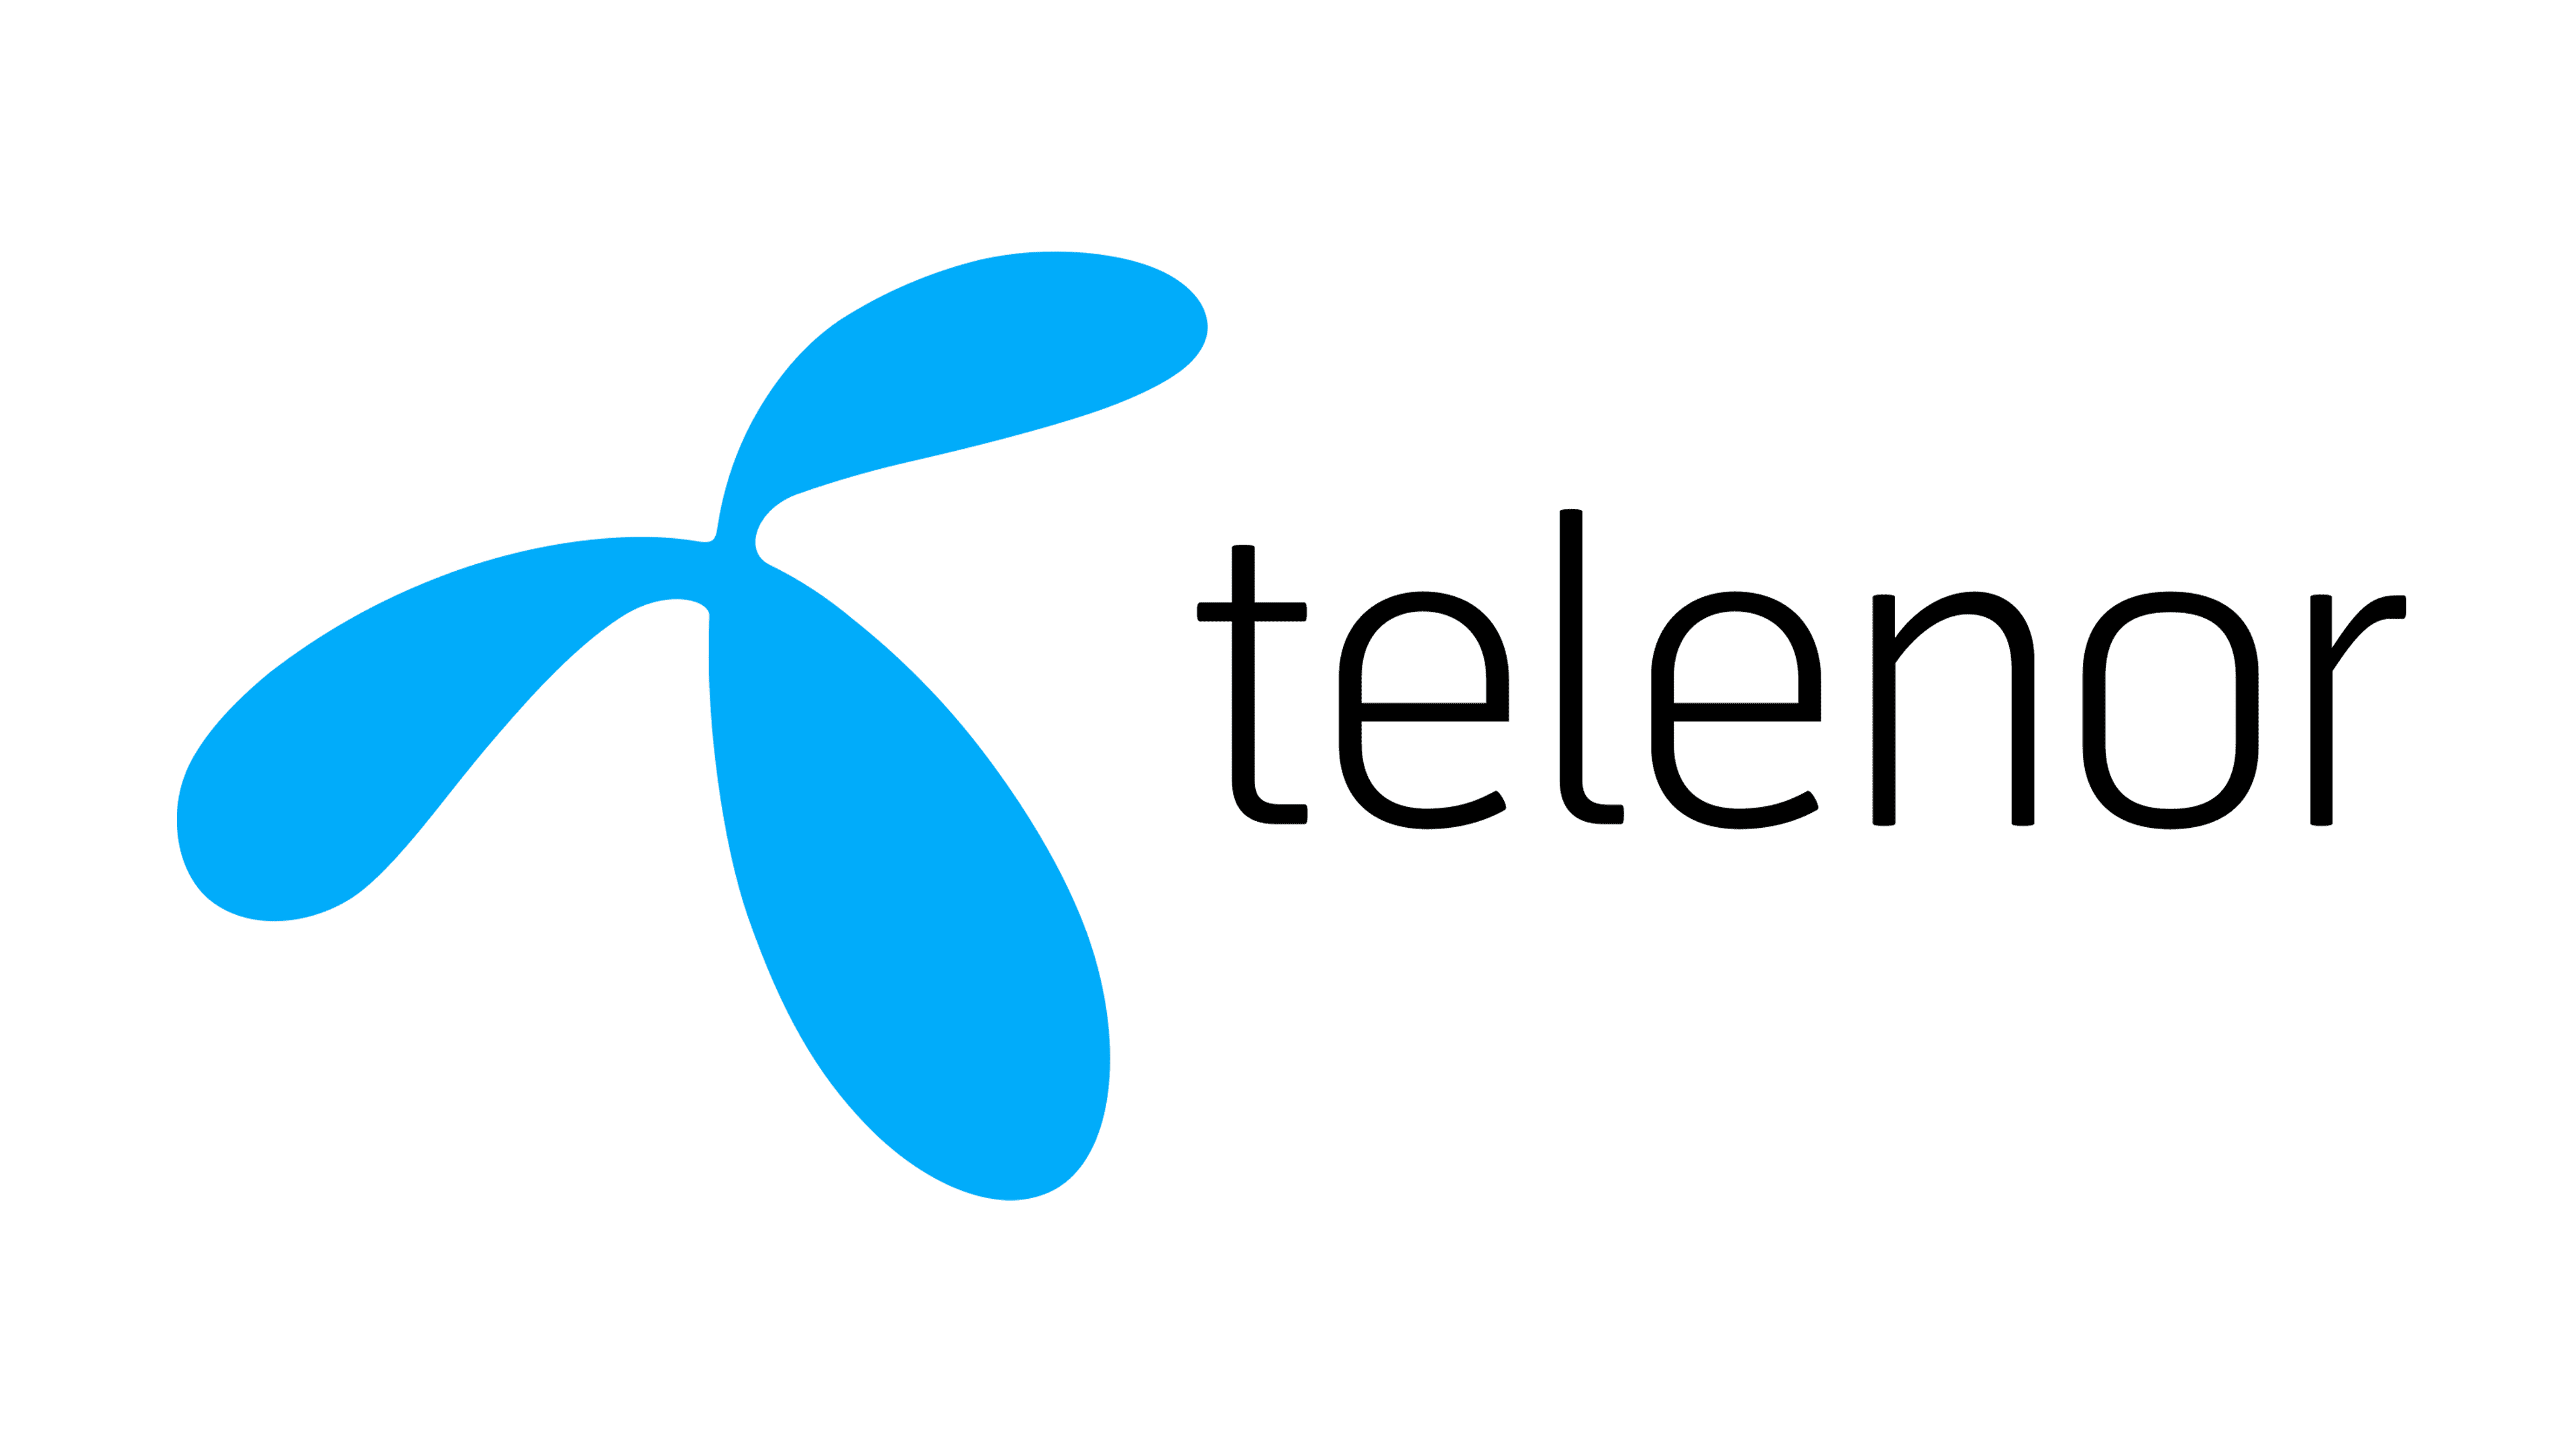 Bli en del av Telenors satsning på säkra nätverks- och kommunikationstjänster genom AW Academy!